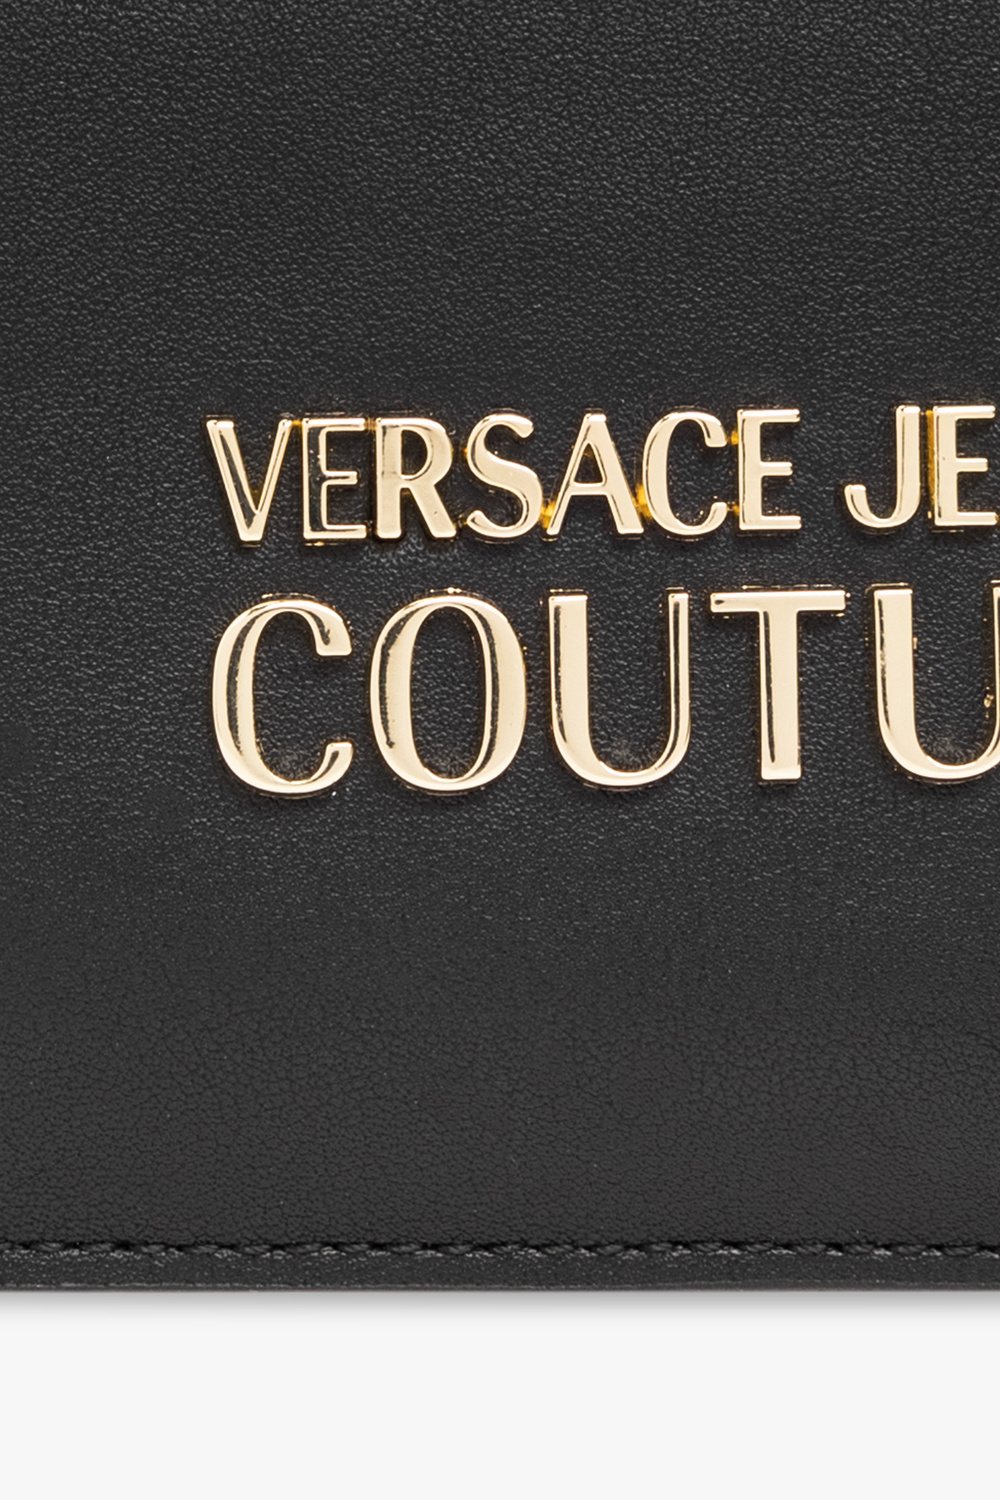 Versace Board jeans Couture Bleu clair Tezenis Board jeans troués